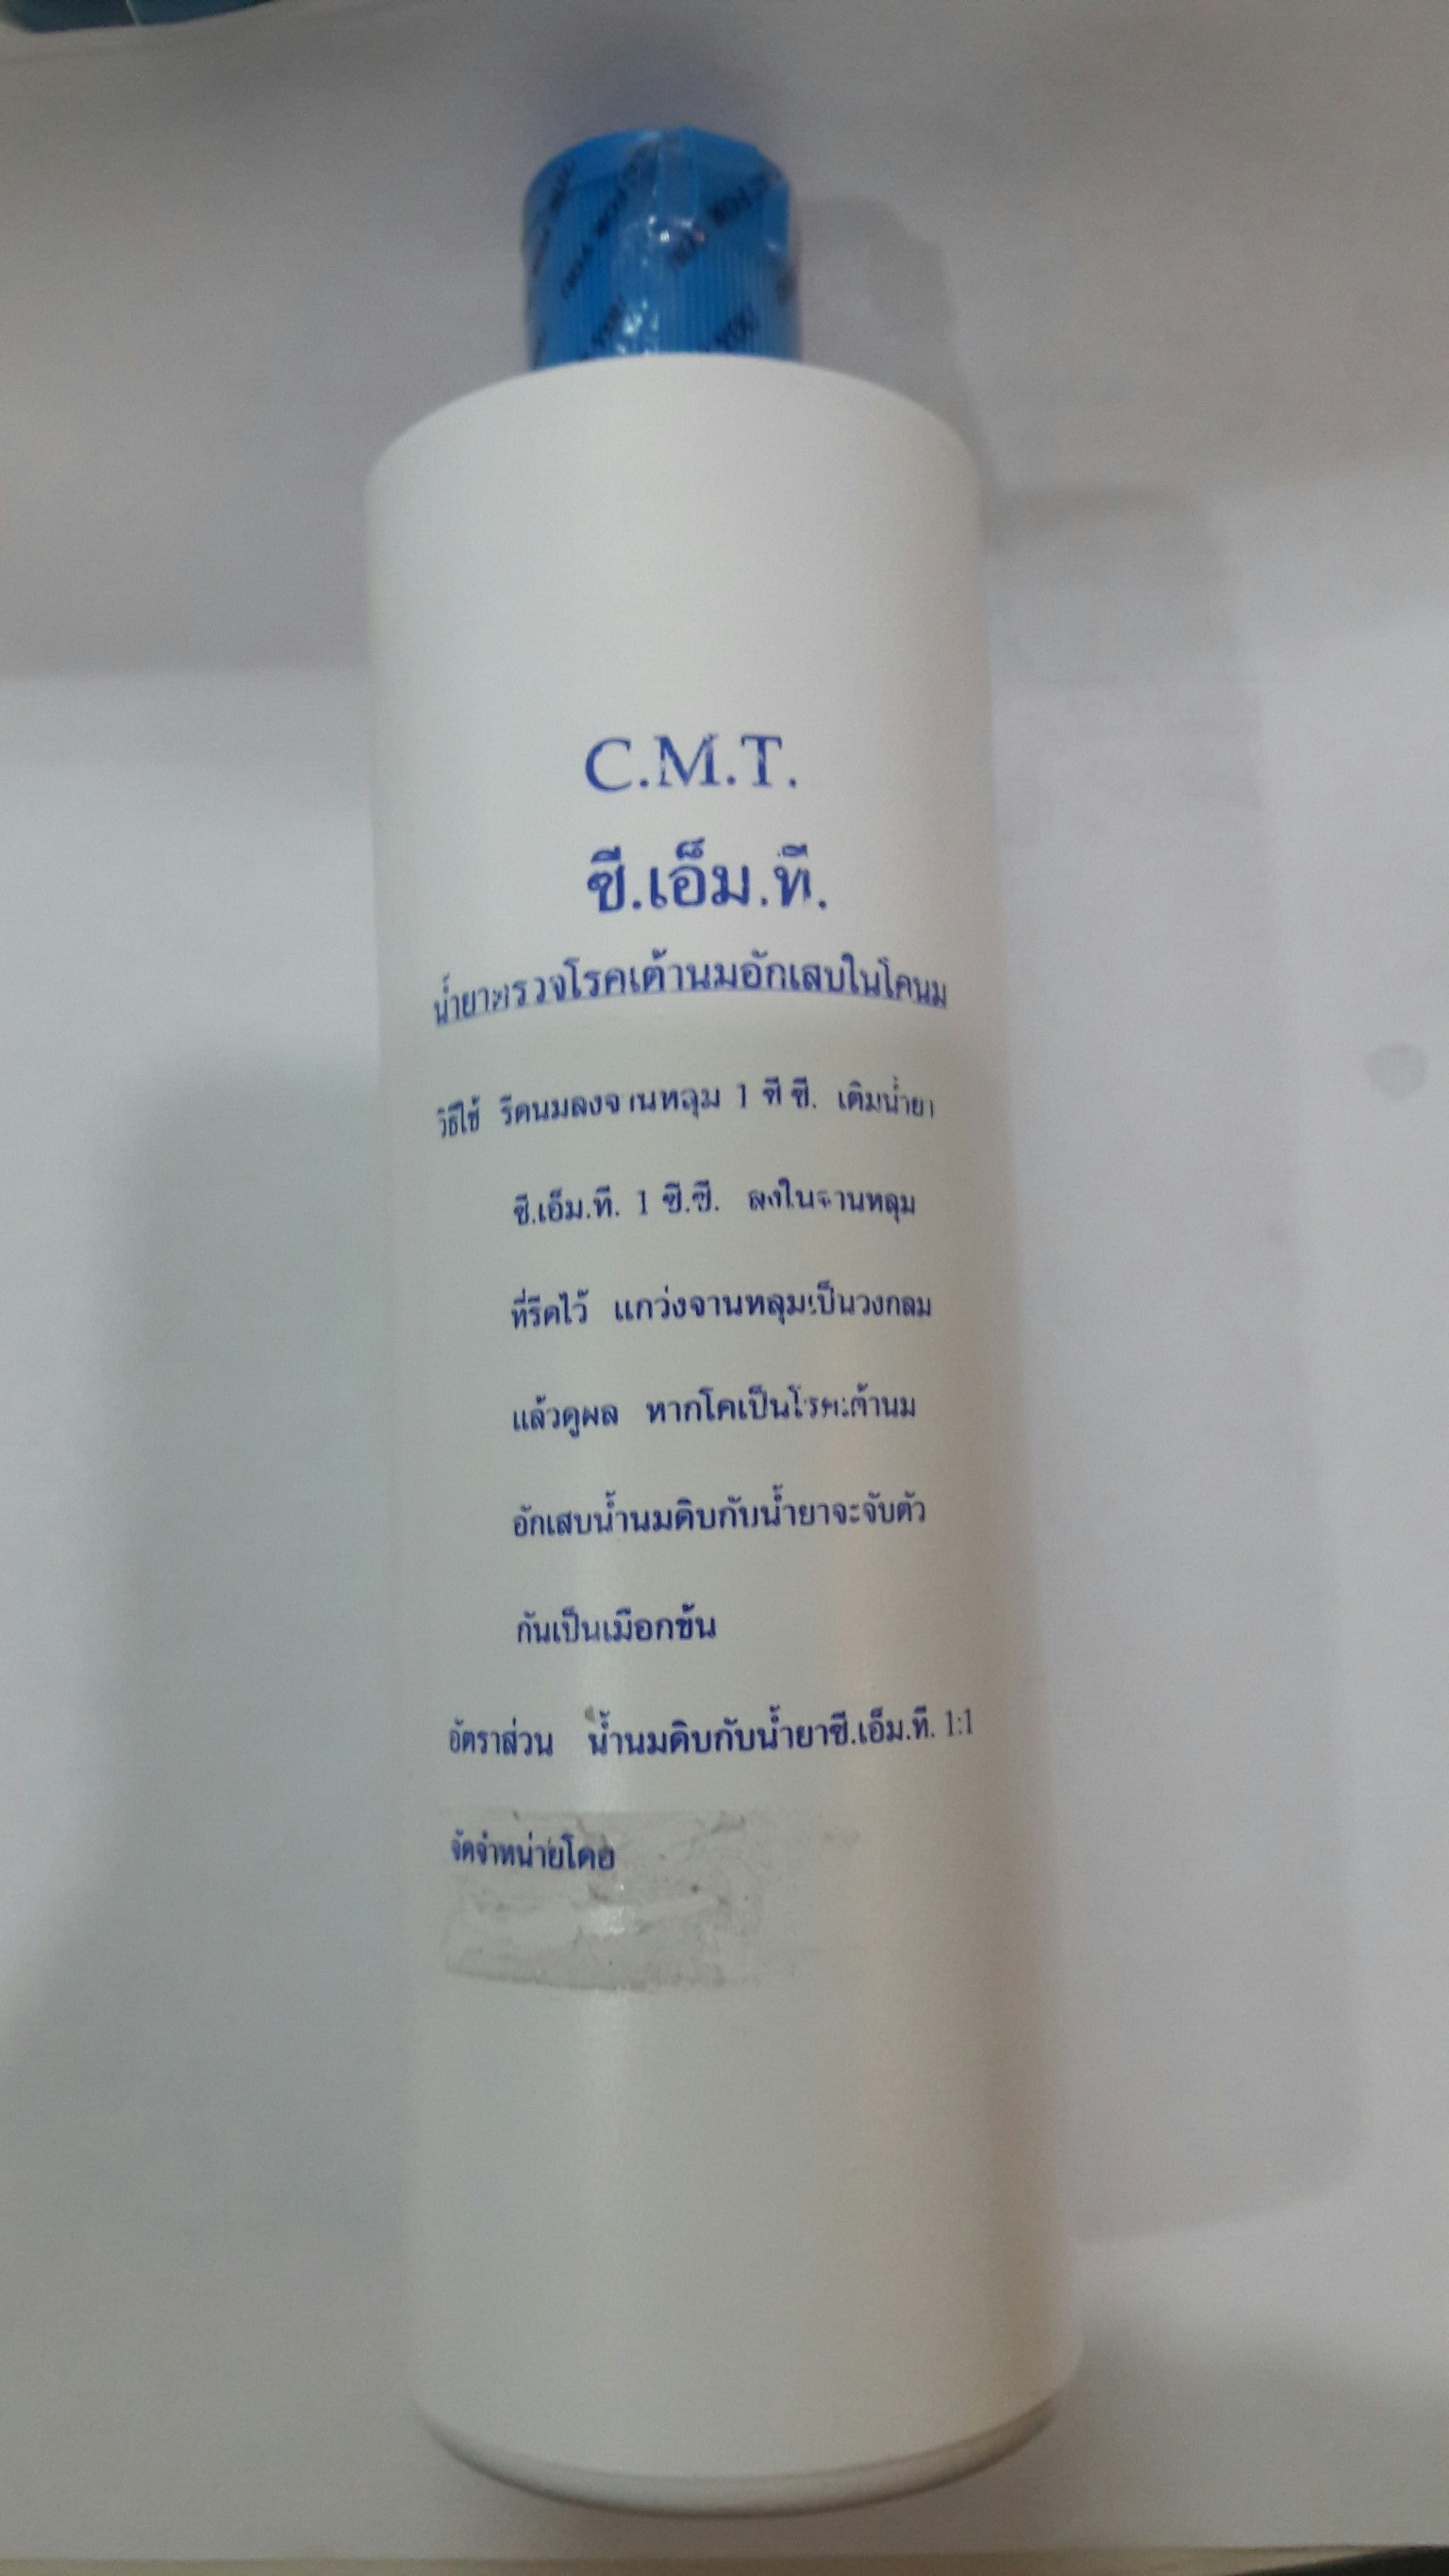 อุปกรณ์โคนม / น้ำยา CMT